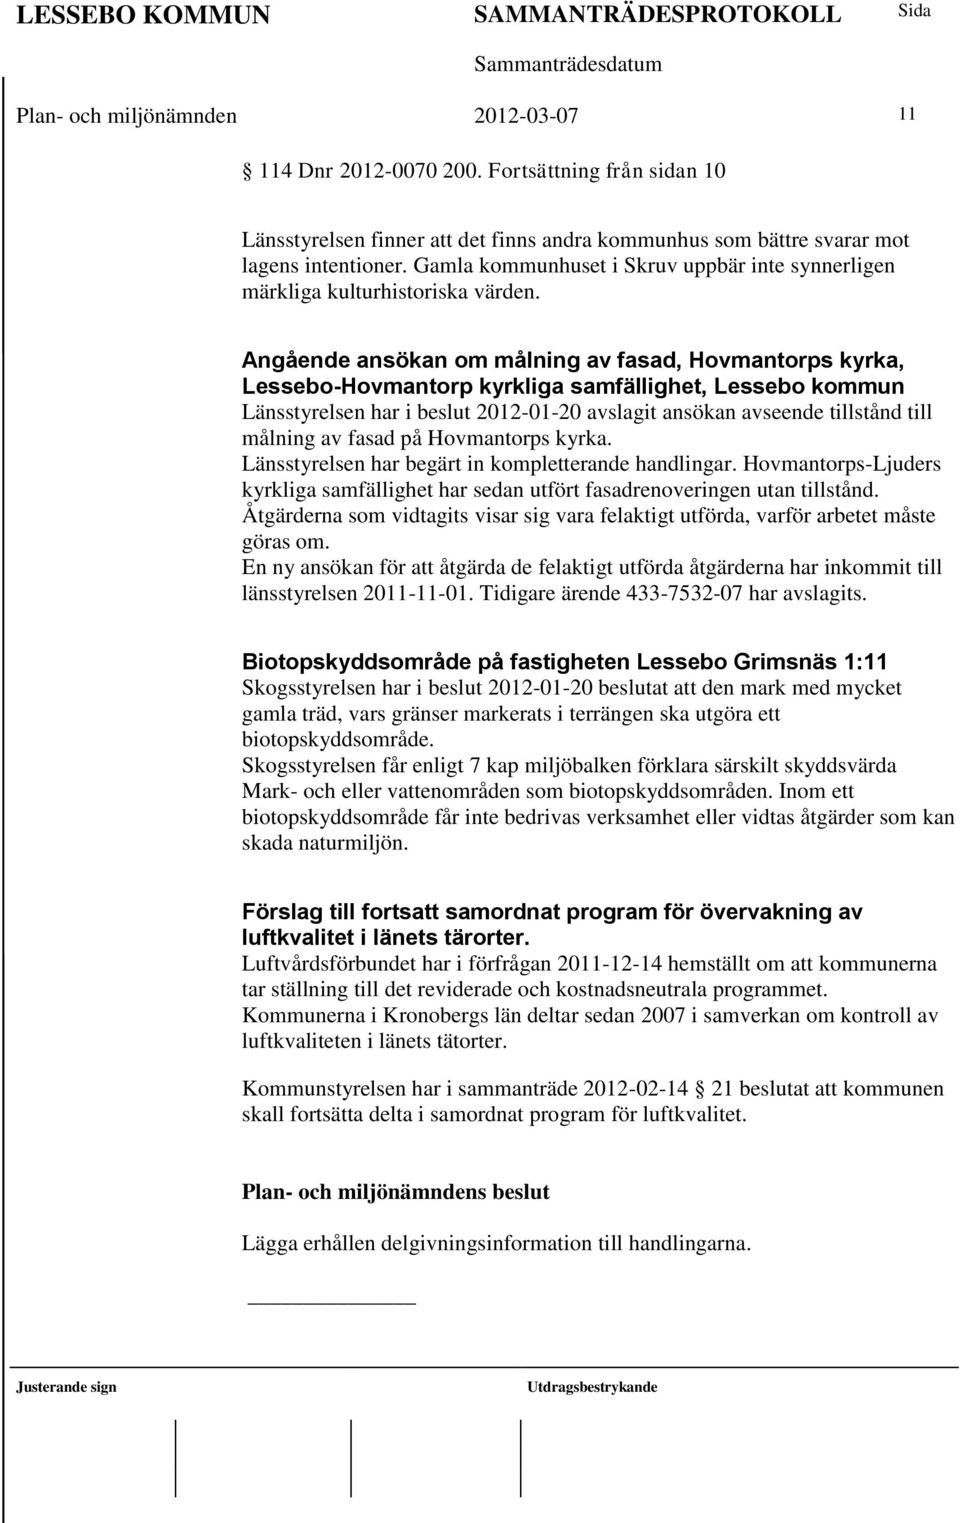 Angående ansökan om målning av fasad, Hovmantorps kyrka, Lessebo-Hovmantorp kyrkliga samfällighet, Lessebo kommun Länsstyrelsen har i beslut 2012-01-20 avslagit ansökan avseende tillstånd till